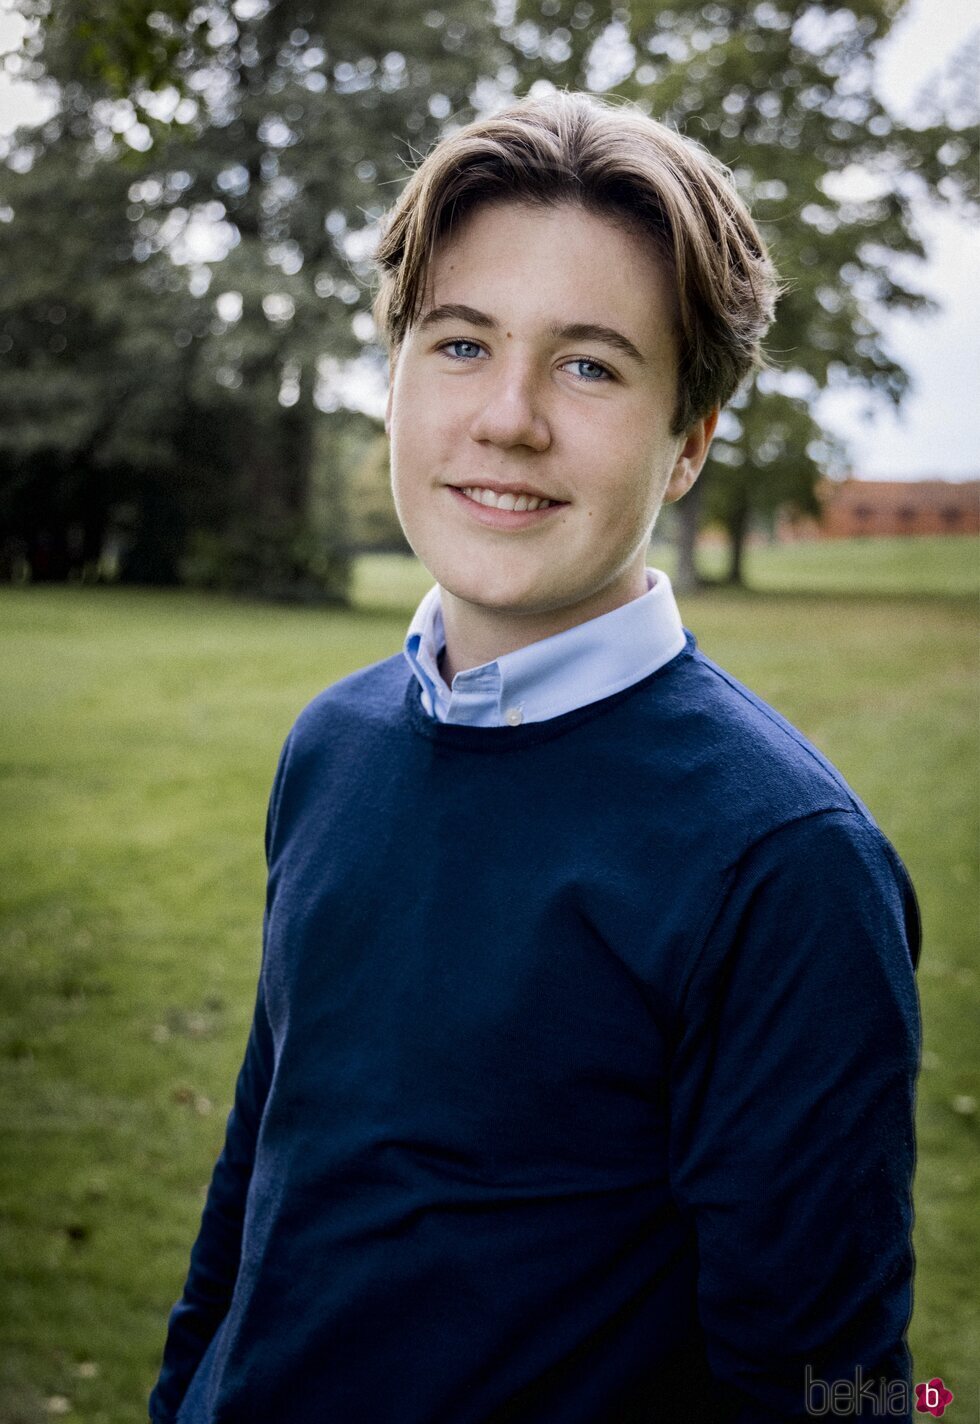 Christian de Dinamarca, muy sonriente en su 16 cumpleaños